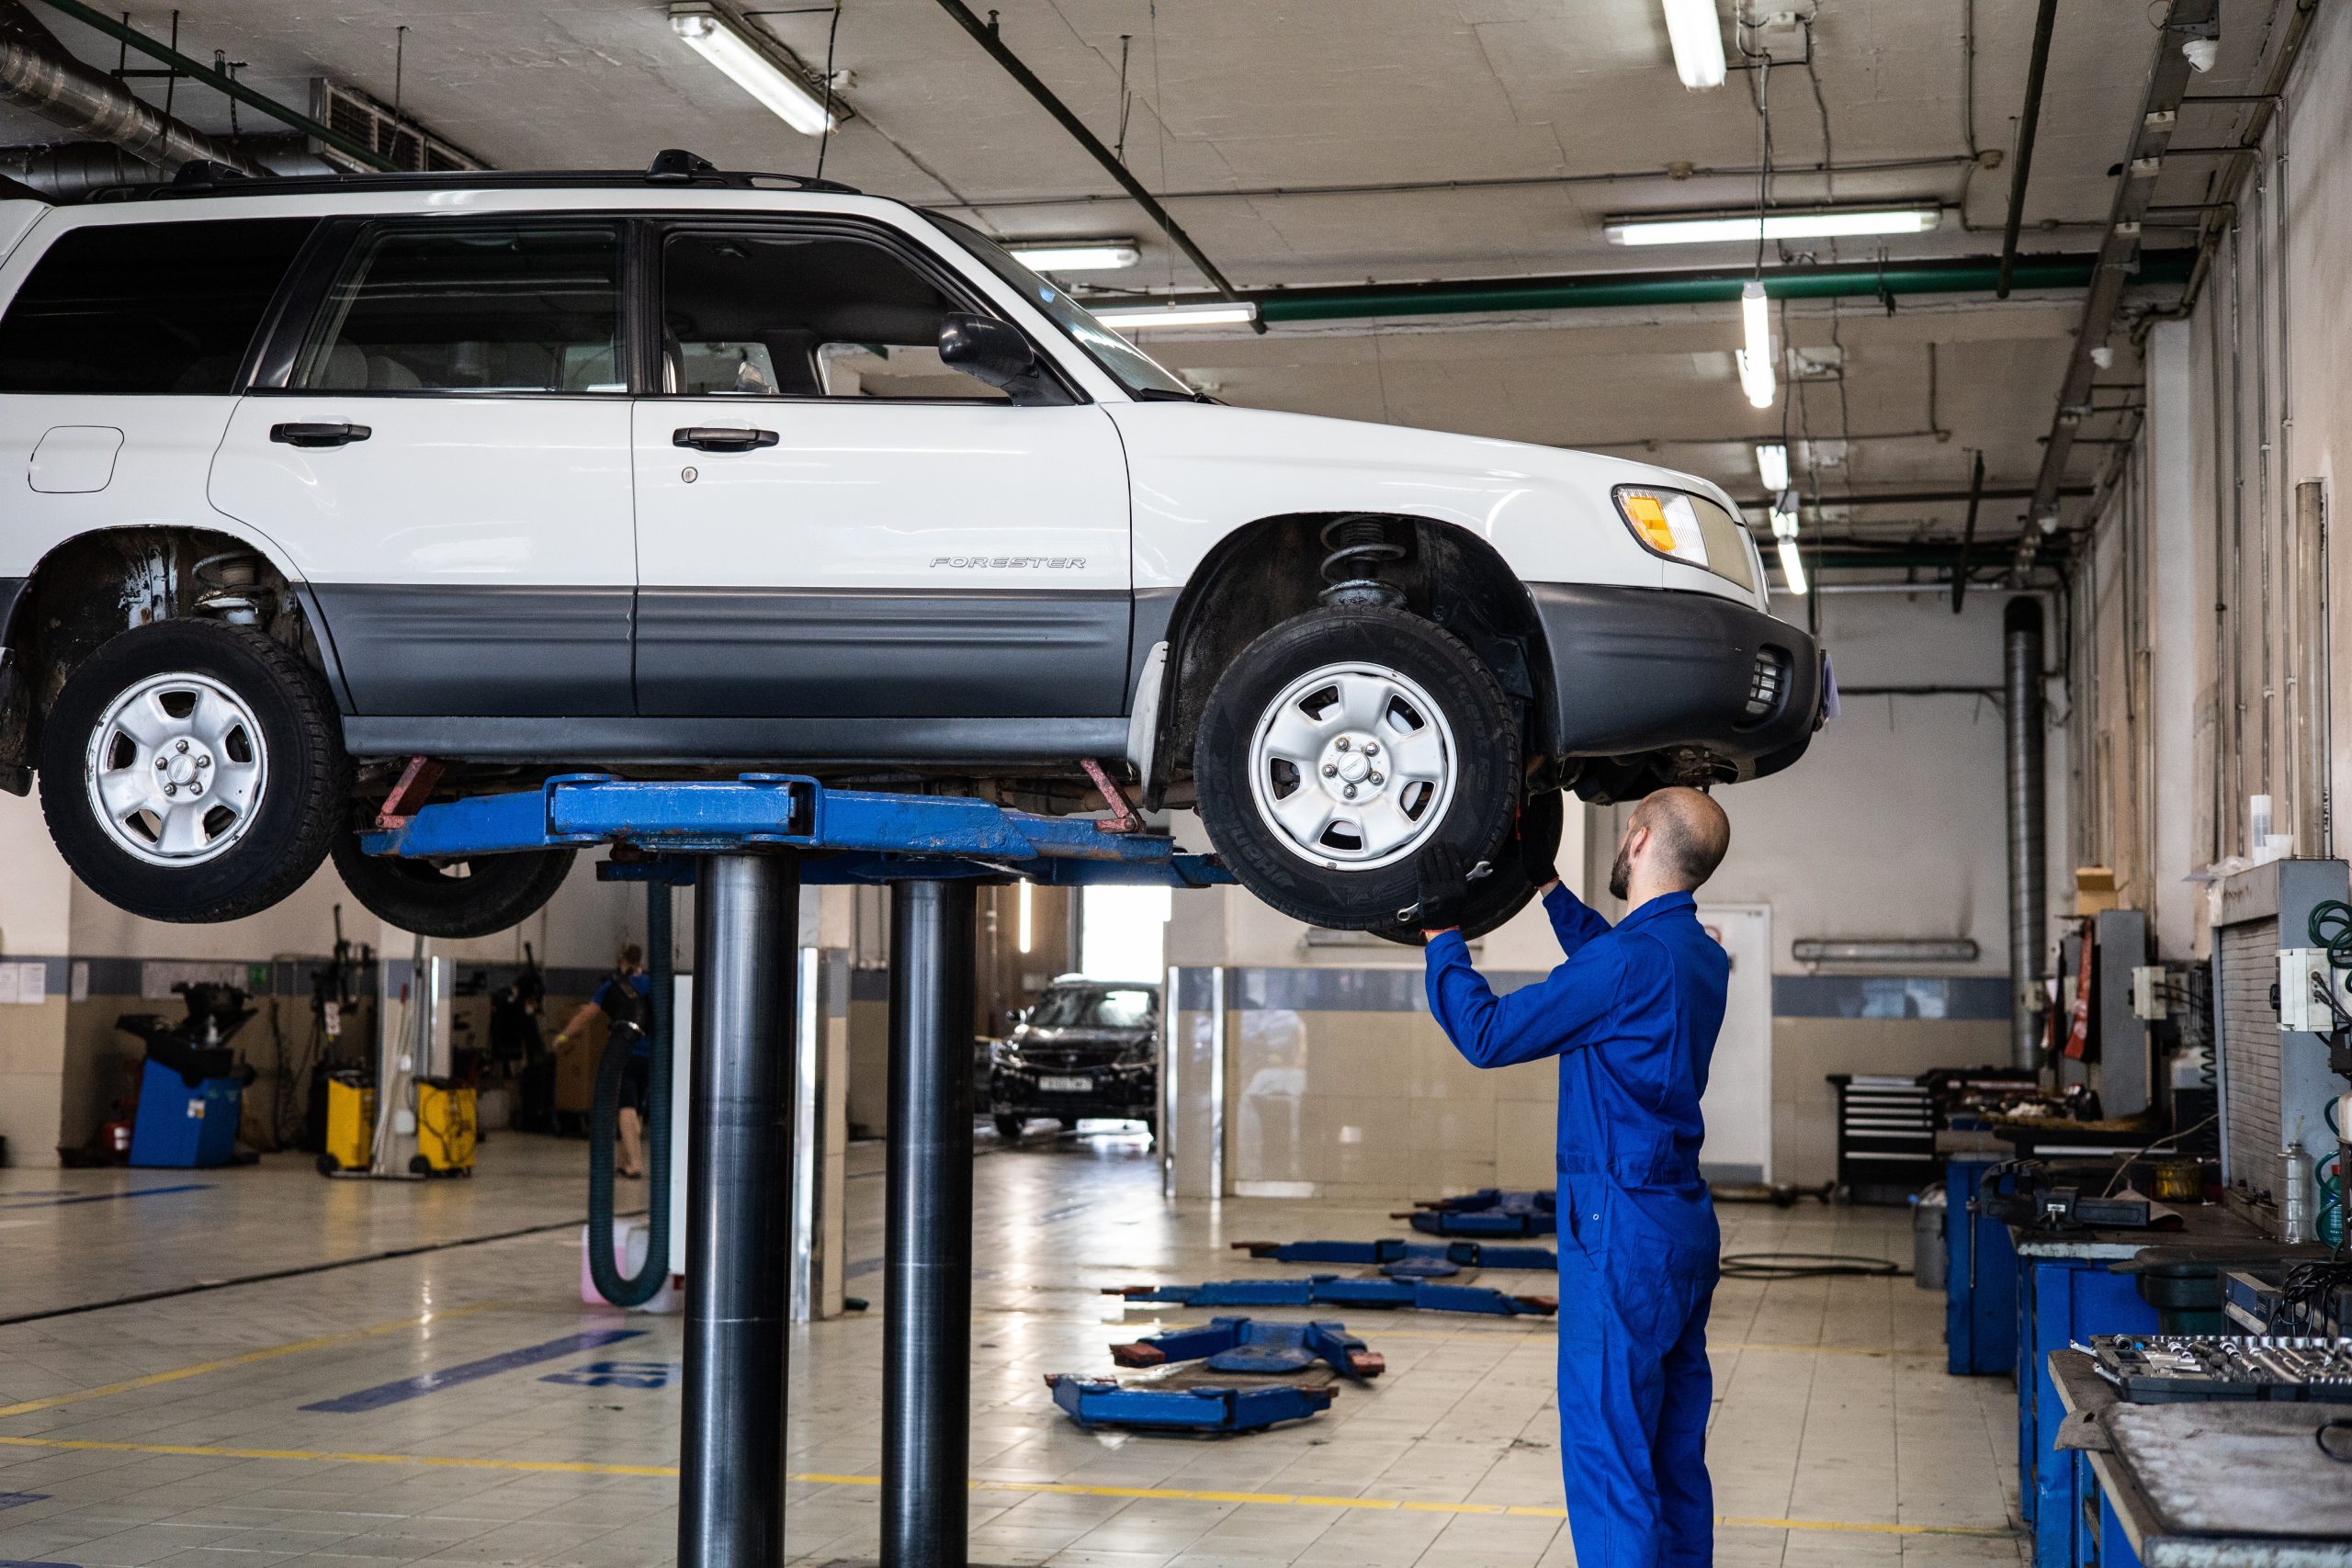 Talleres de reparación de autos en Utebo: Servicio confiable y de calidad